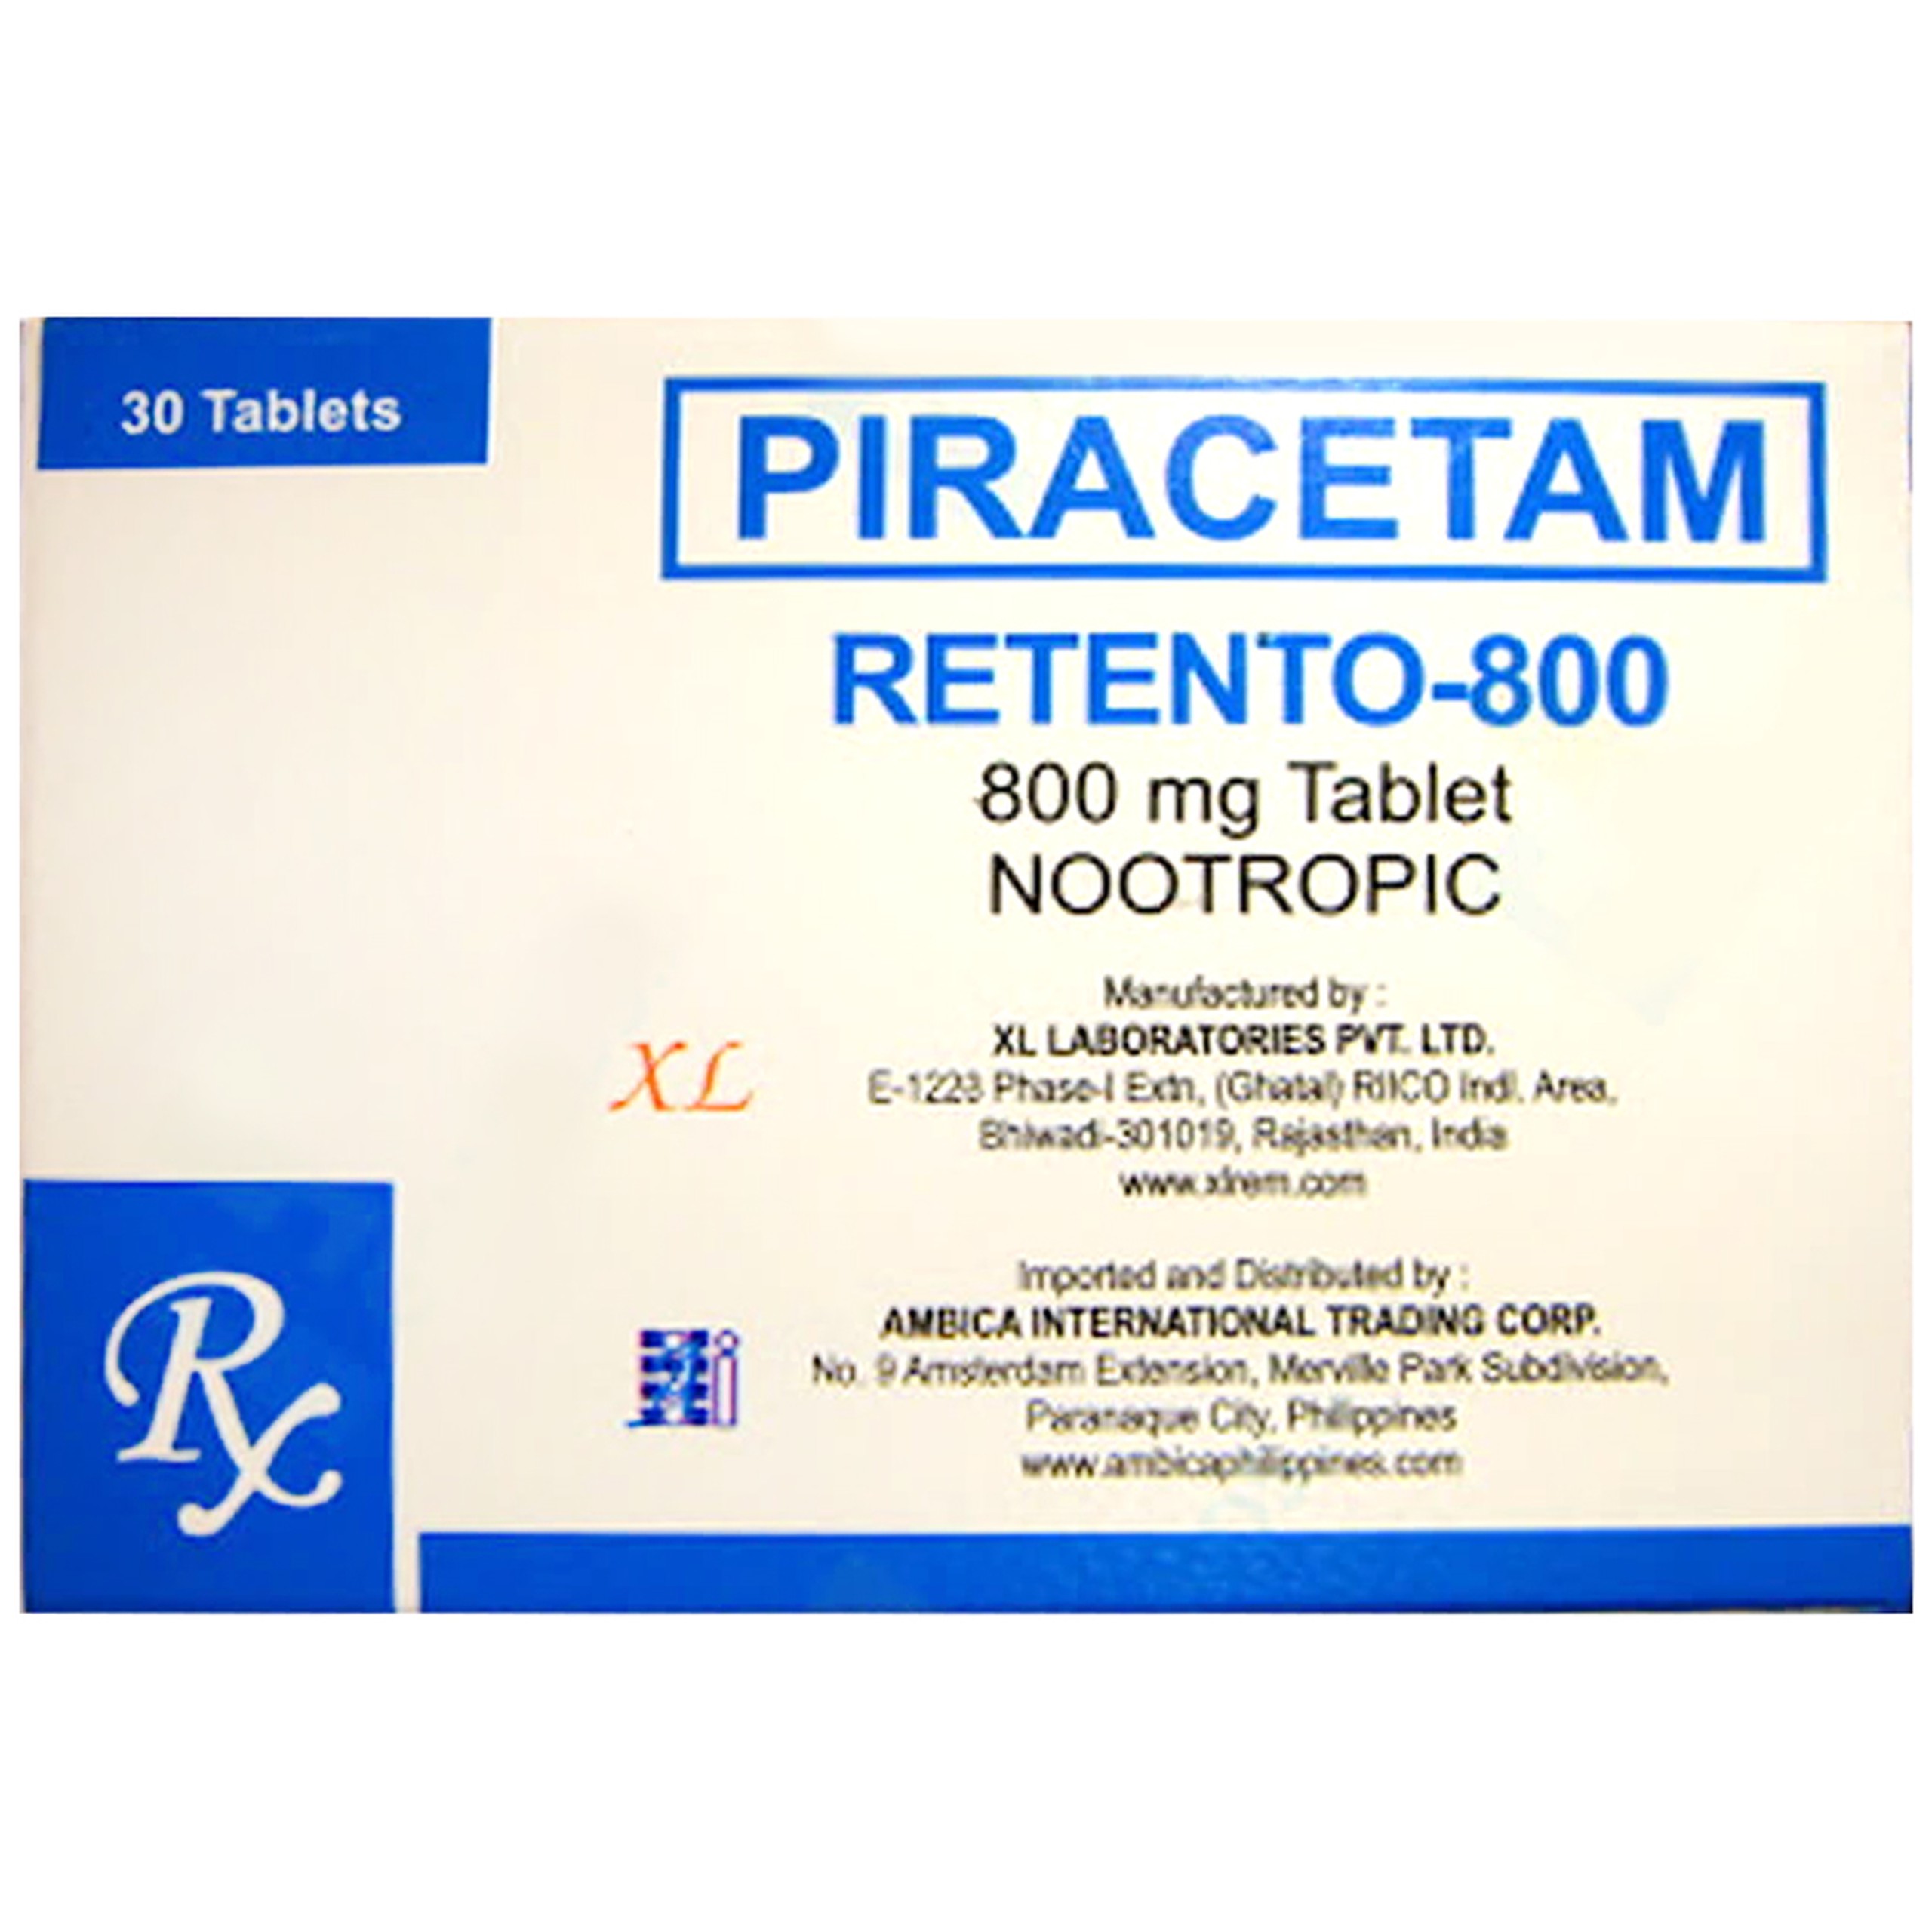 Thuốc Retento 800 Piracetam XL Laboratories điều trị rối loạn thần kinh trung ương, tổn thương não bộ, suy giảm chức năng thần kinh